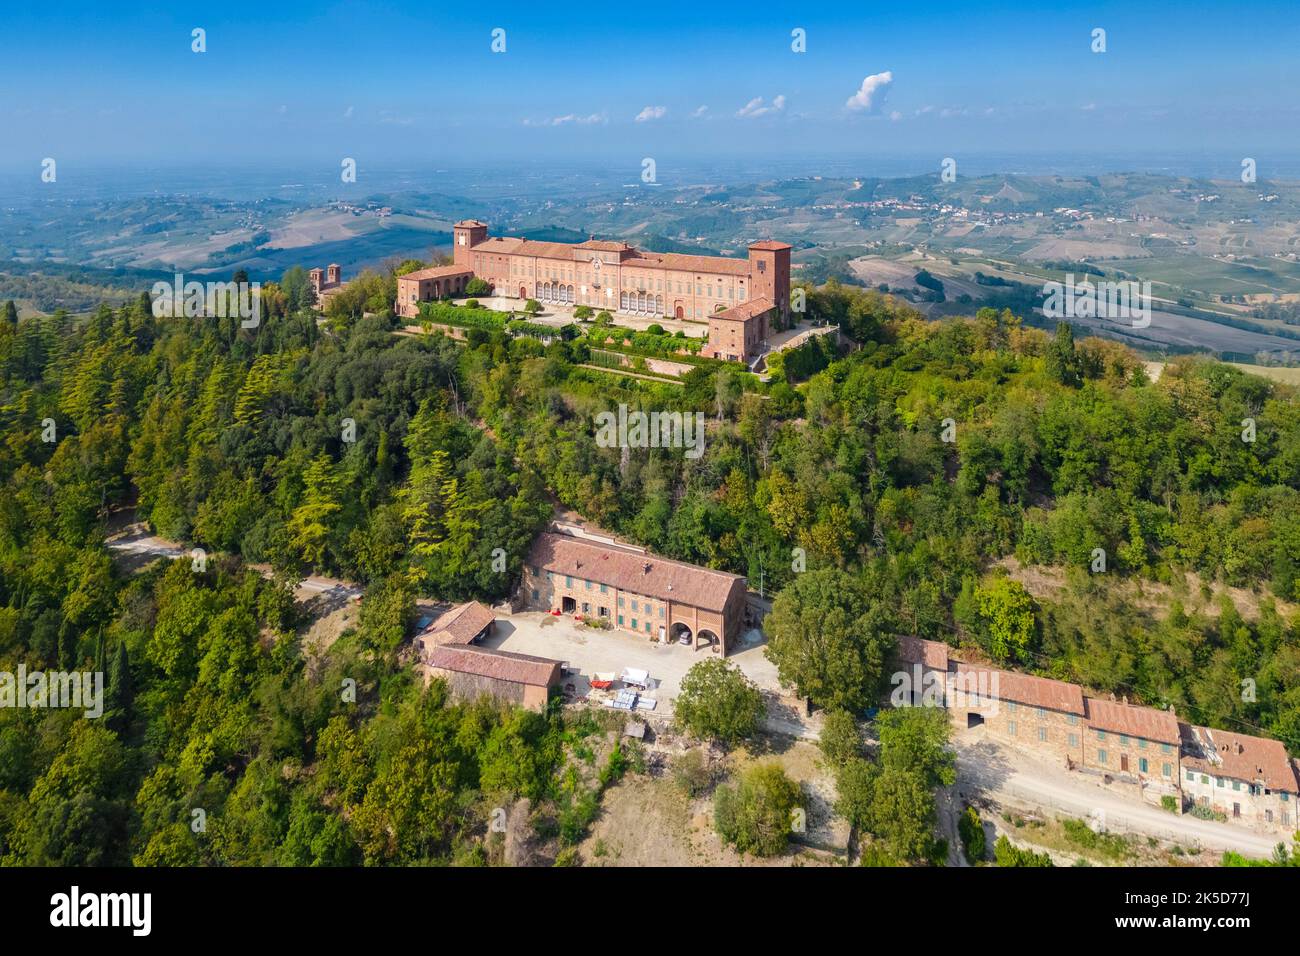 Luftaufnahme des Schlosses und der Weinberge von Montalto Pavese. Montalto Pavese, Oltrepo Pavese, Provinz Pavia, Lombardei, Italien. Stockfoto